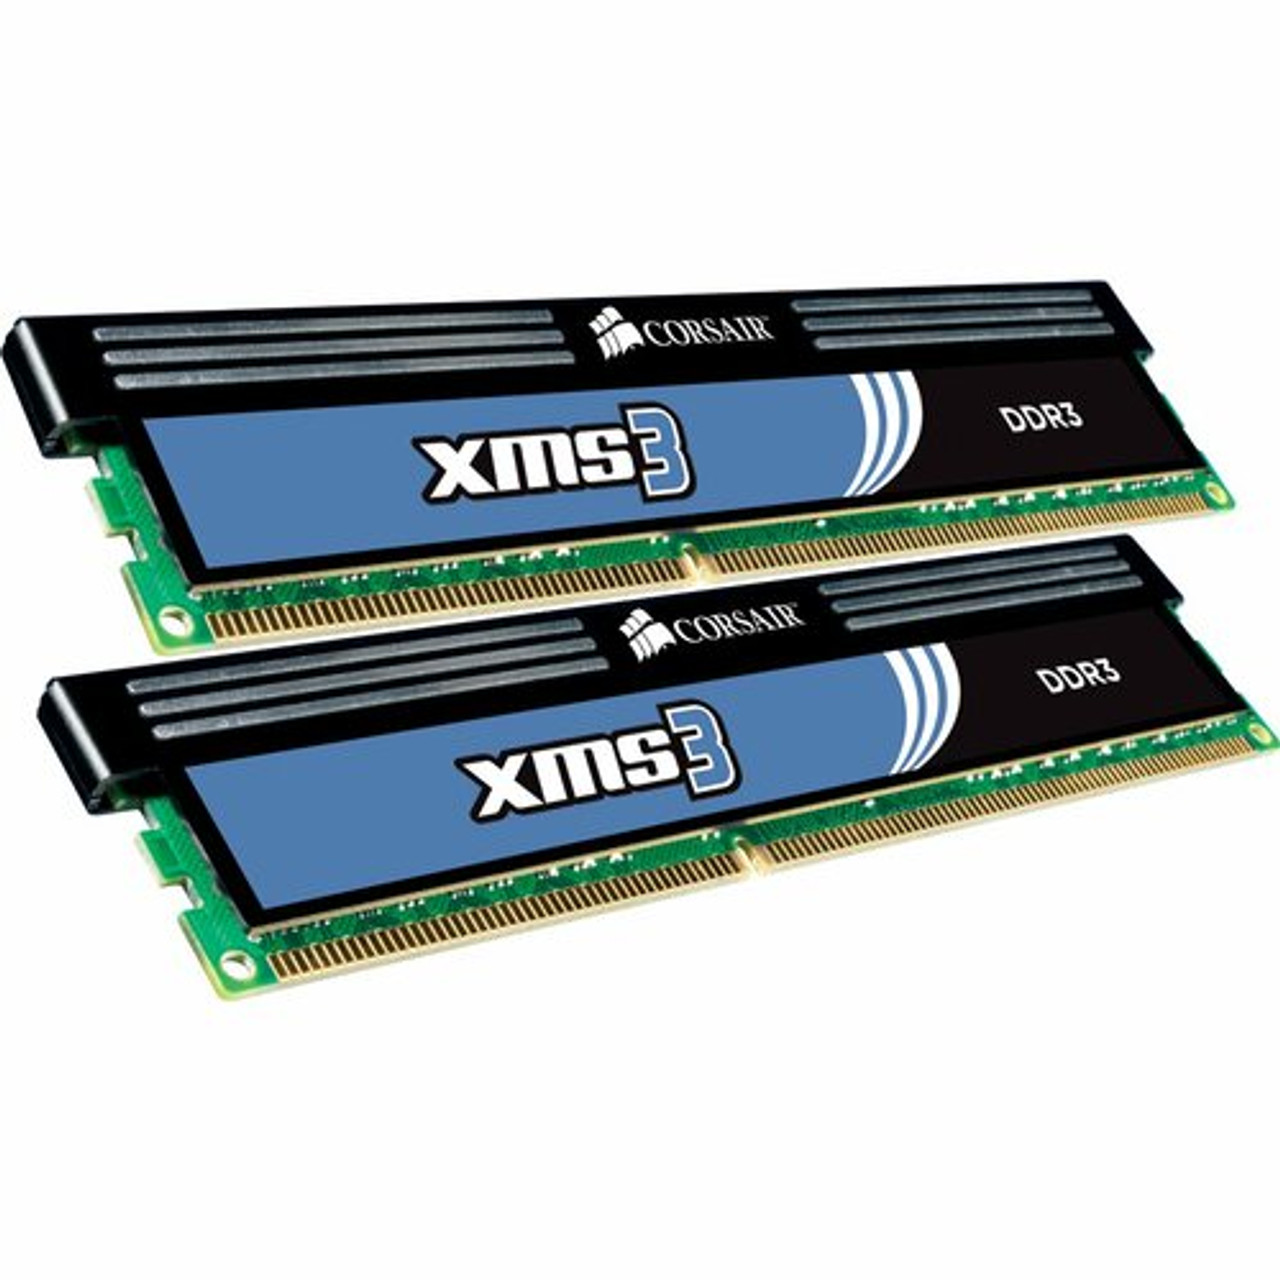 Børnecenter Destruktiv Generelt sagt Corsair XMS3 8GB DDR3 SDRAM Memory Module